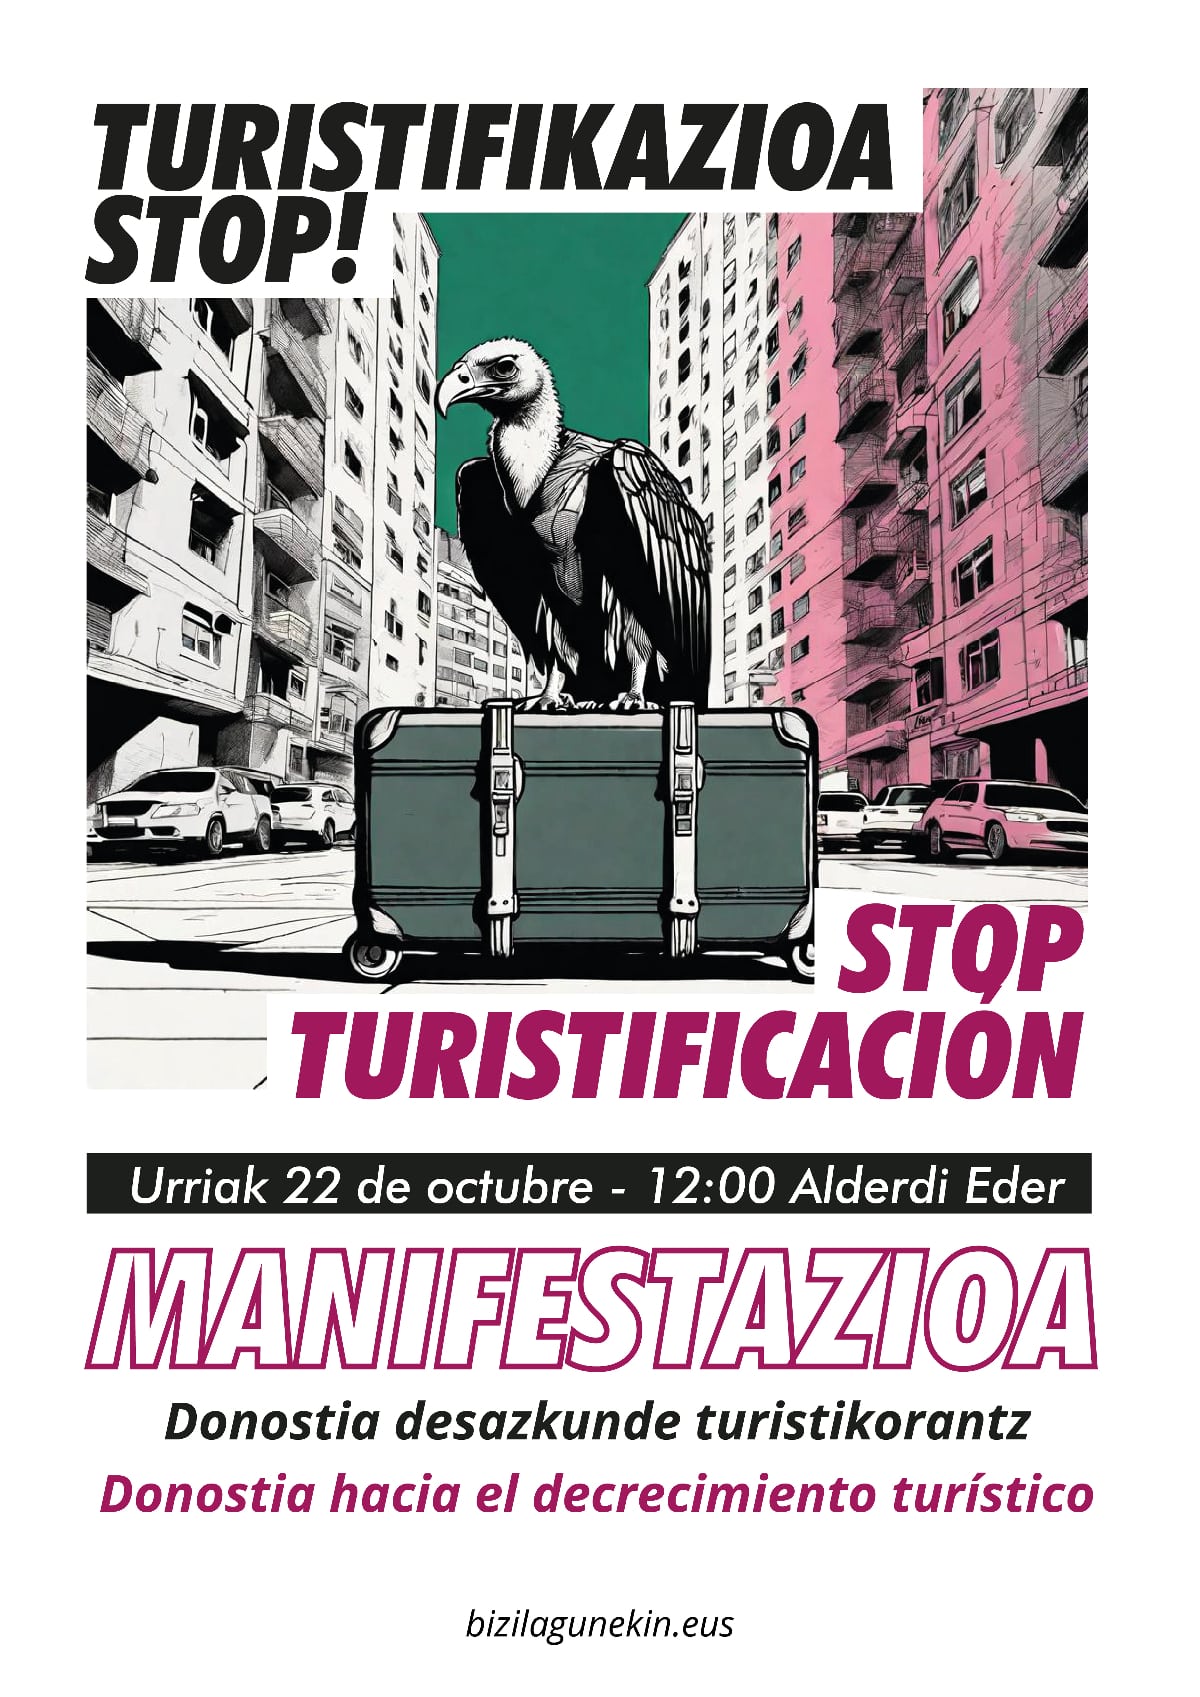 urr22 MANIFA kartela 09 - La marcha contra la turistificación en Donostia recibe el apoyo de una treintena de entidades